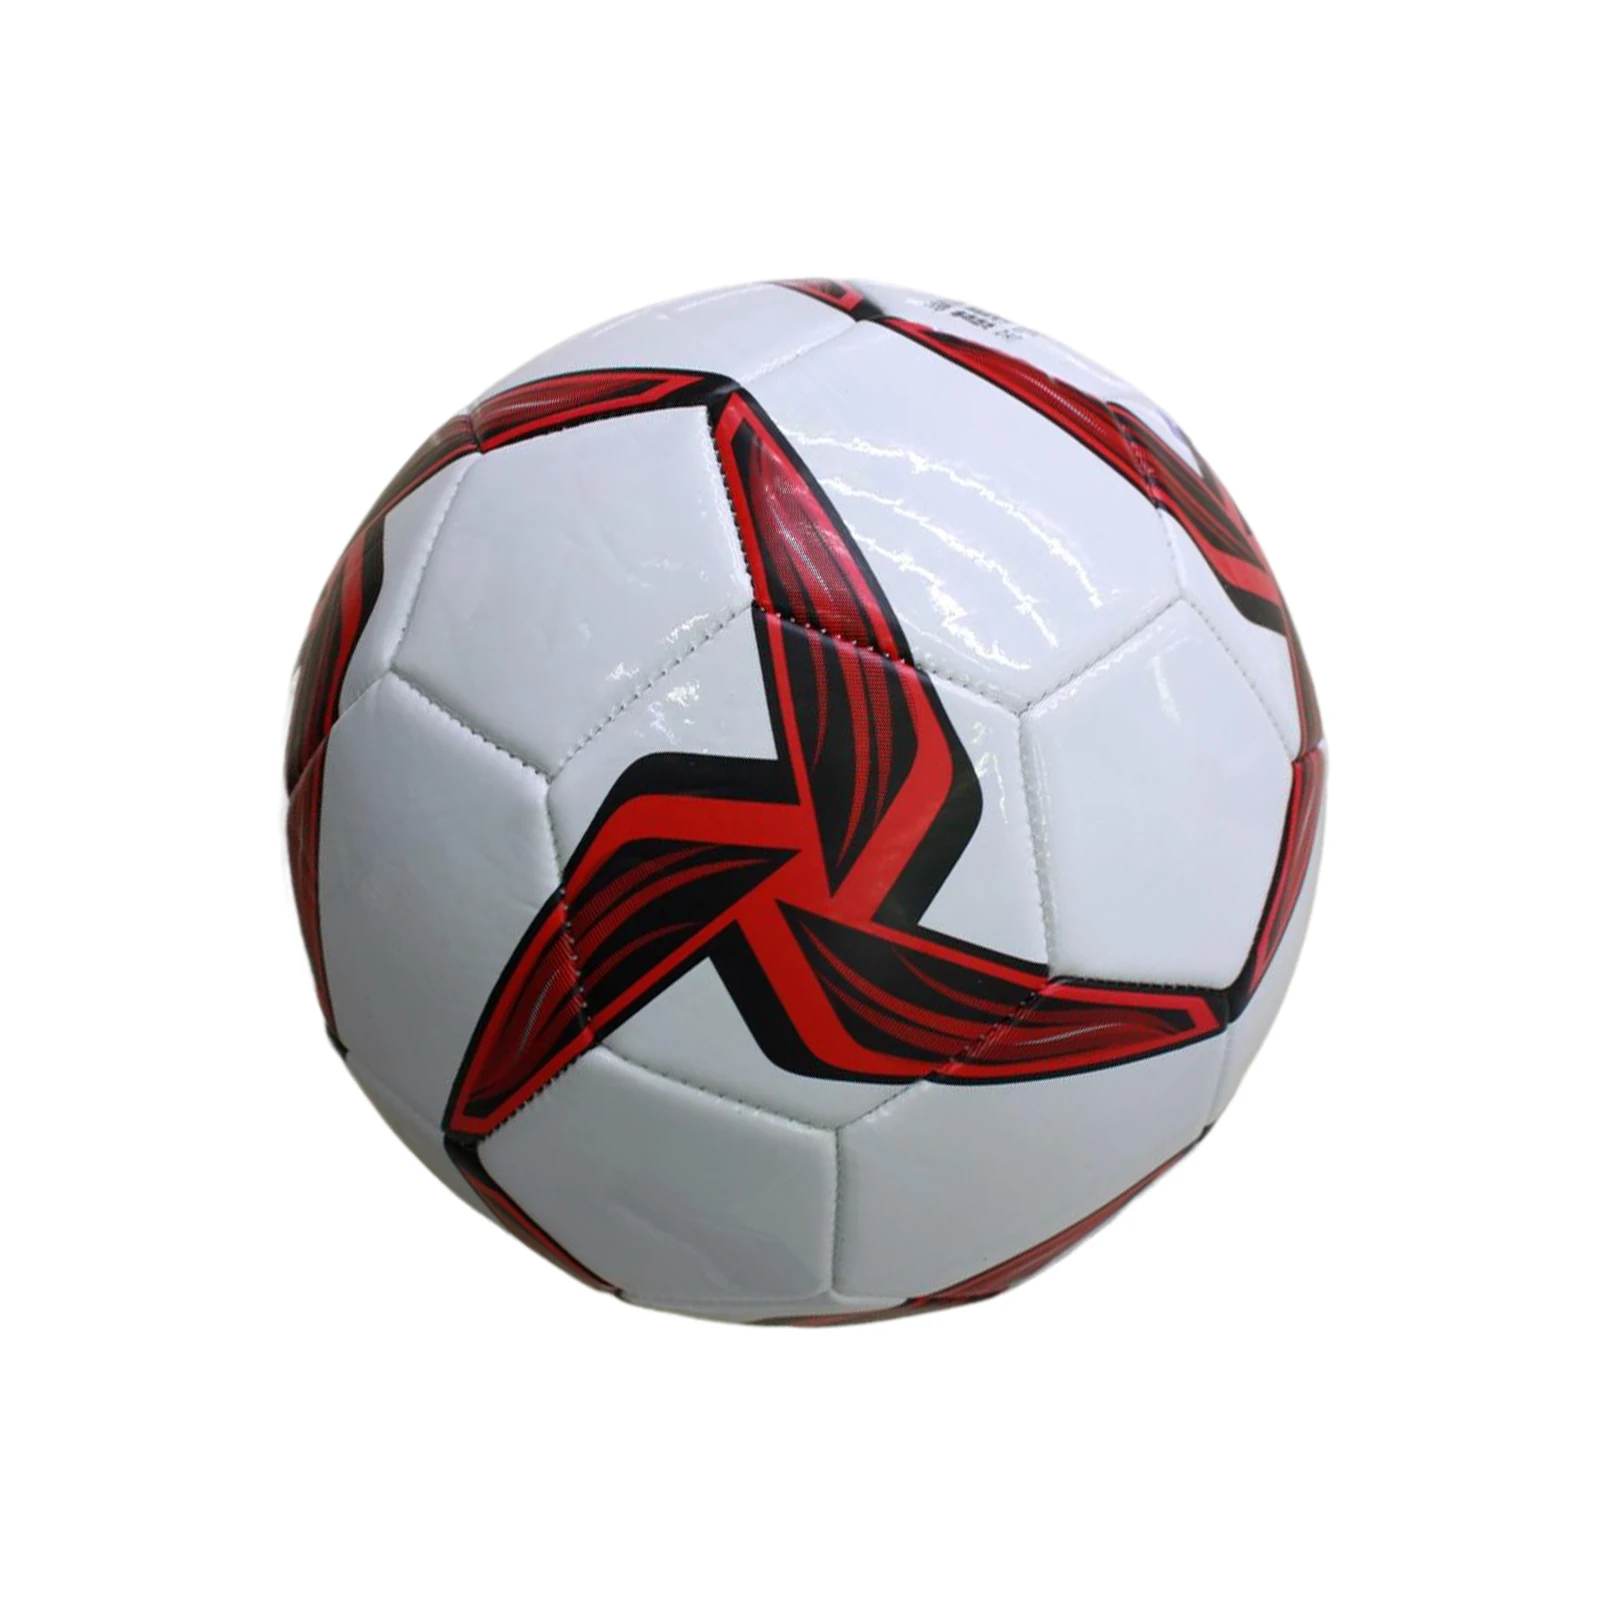 

Уникальный внешний вид, профессиональный футбольный мяч из ПУ, официальный размер для тренировок